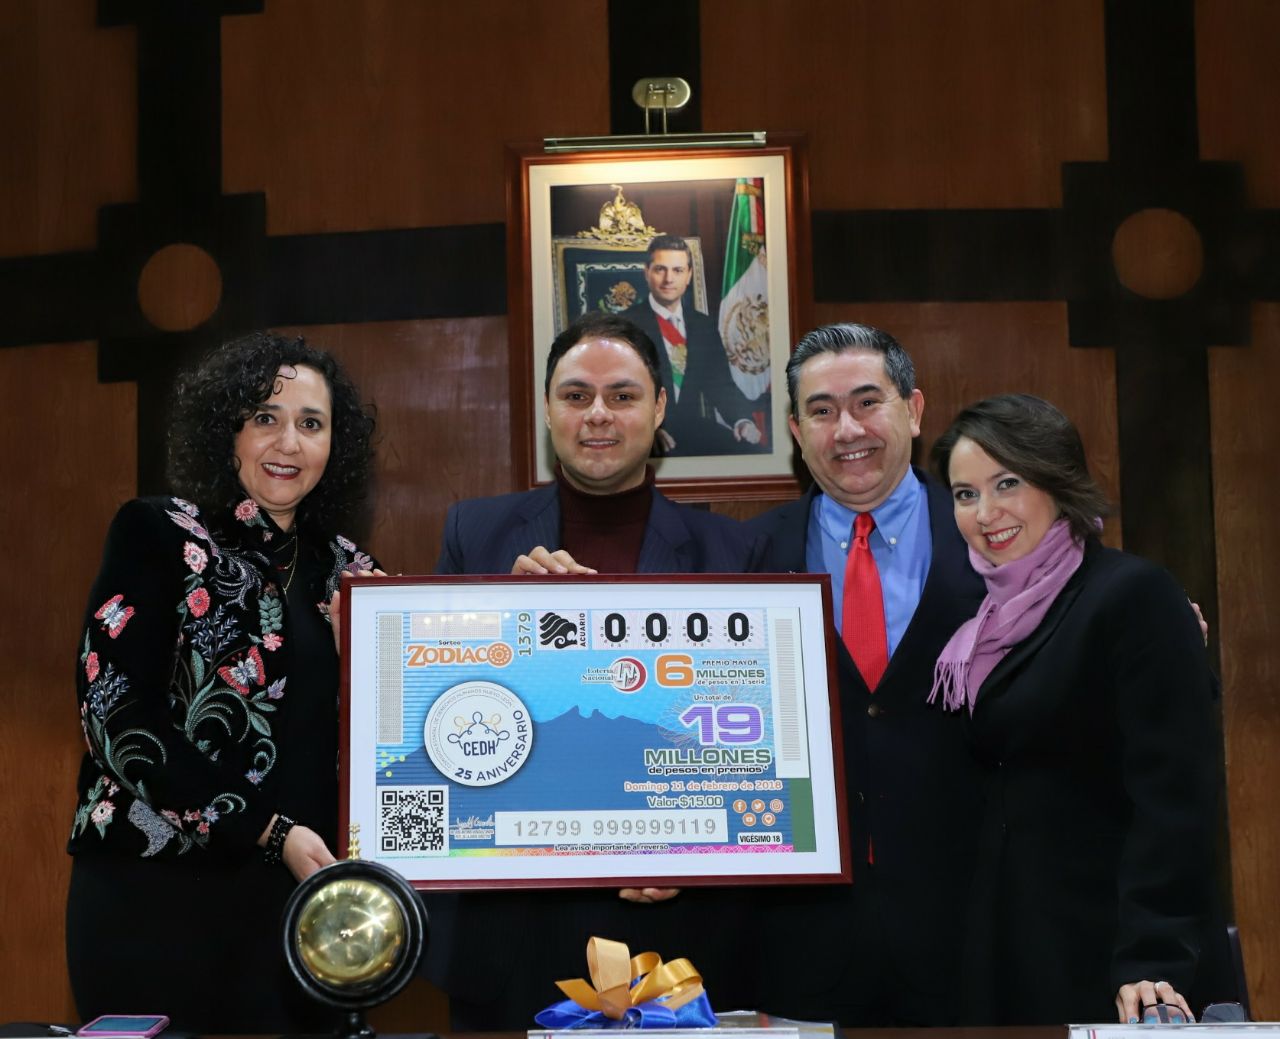 Entrega de la ampliación del billete a Sofía Velasco Becerra Presidenta de la Comisión Estatal de Derechos Humanos de Nuevo León los acompañan otros miembros que presidieron el evento 